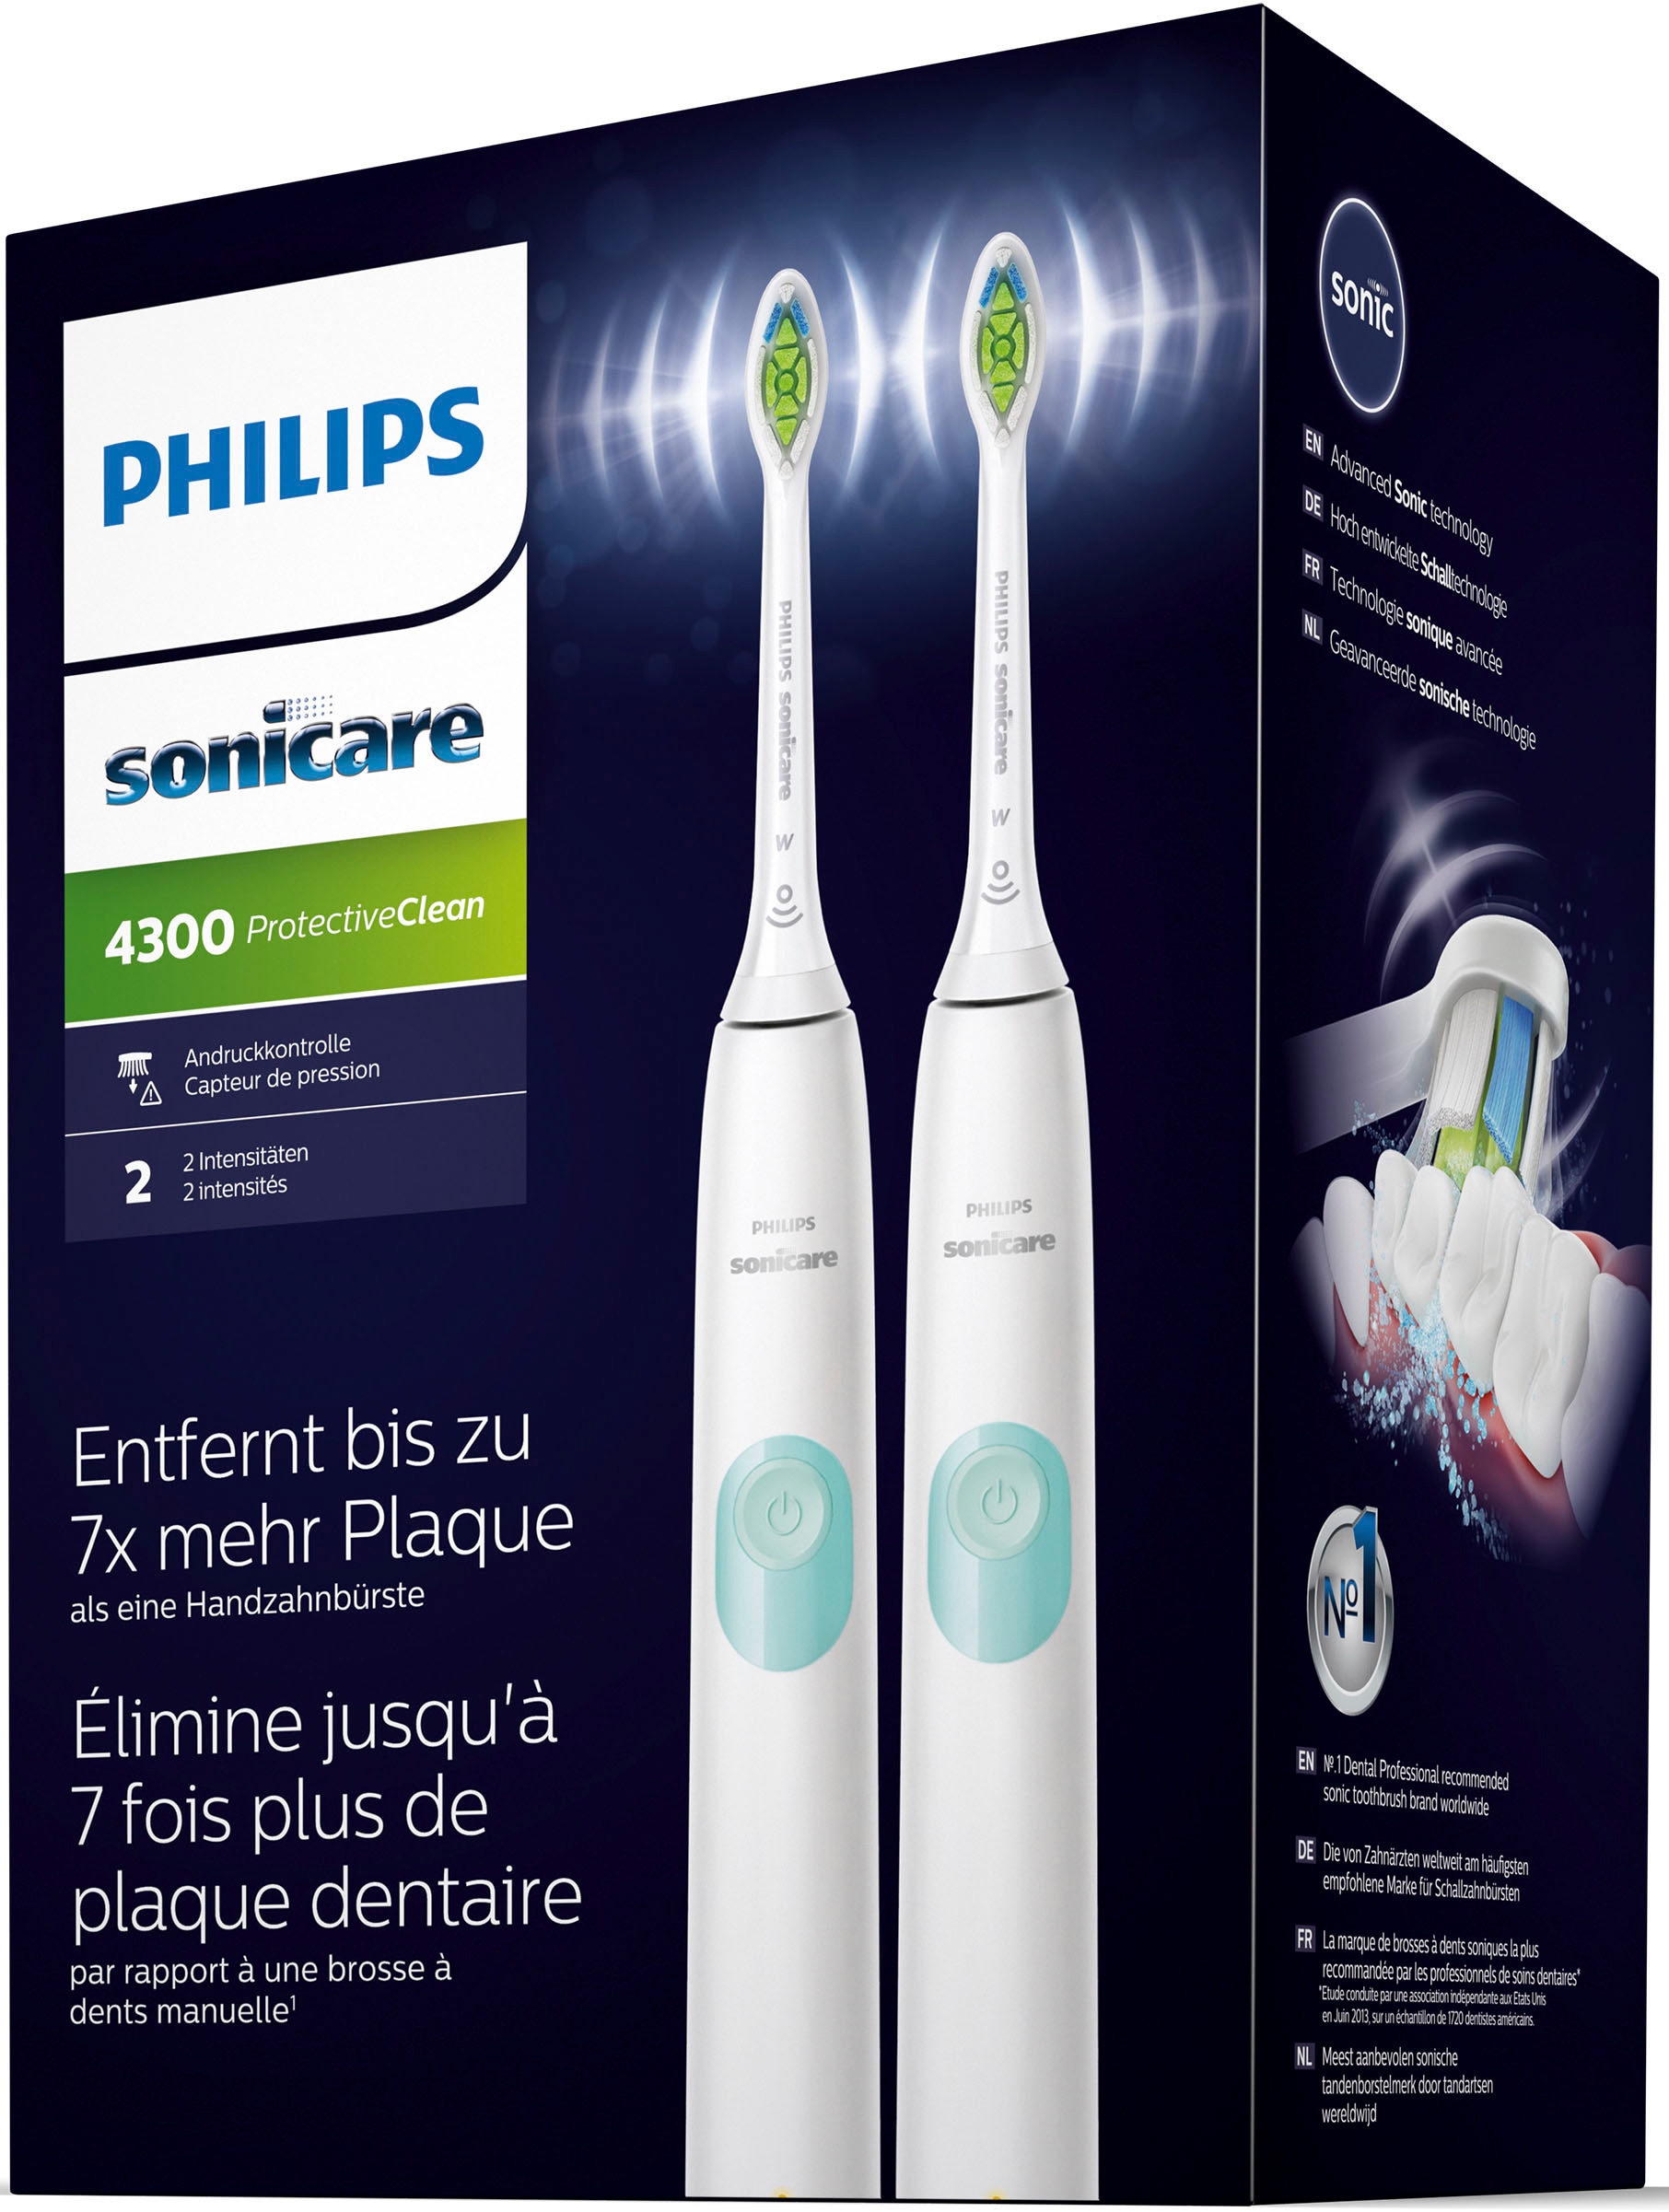 Philips Sonicare Elektrische Zahnbürste 1 XXL mit Aufsteckbürsten, 3 St. Jahren »HX6807/35«, Putzprogramm Doppelpack, ProtectiveClean 2 4300, Garantie